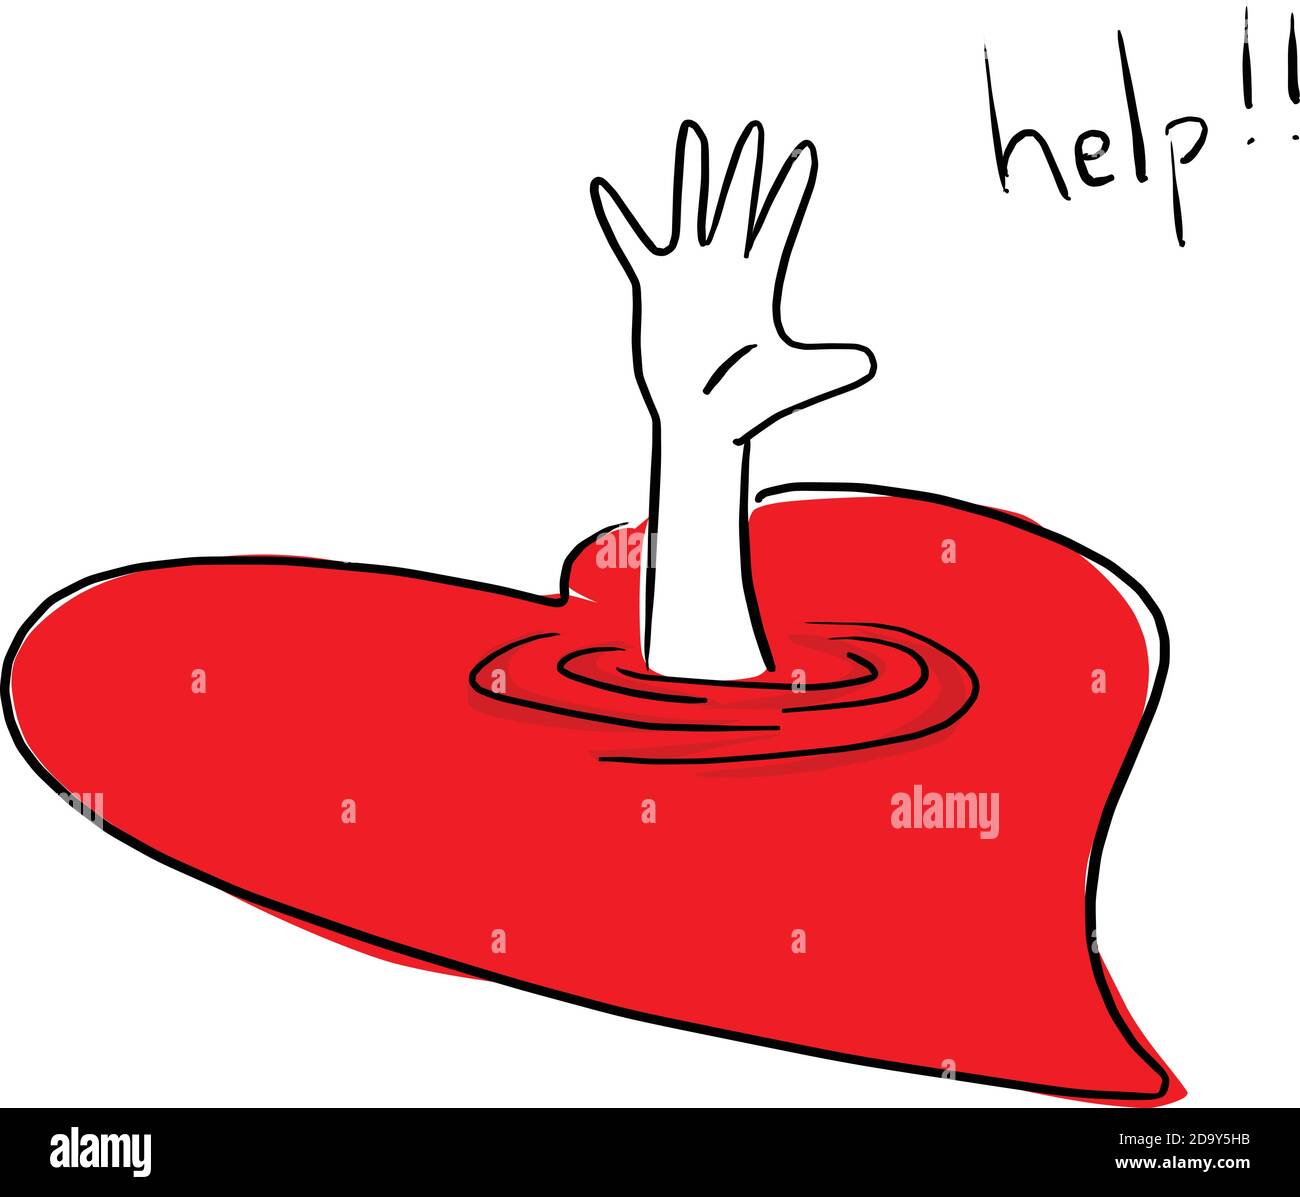 Ertrinken Opfer in roten Herz Vektor-Illustration Skizze Doodle Hand gezeichnet mit schwarzen Linien isoliert auf weißem Hintergrund. Stock Vektor